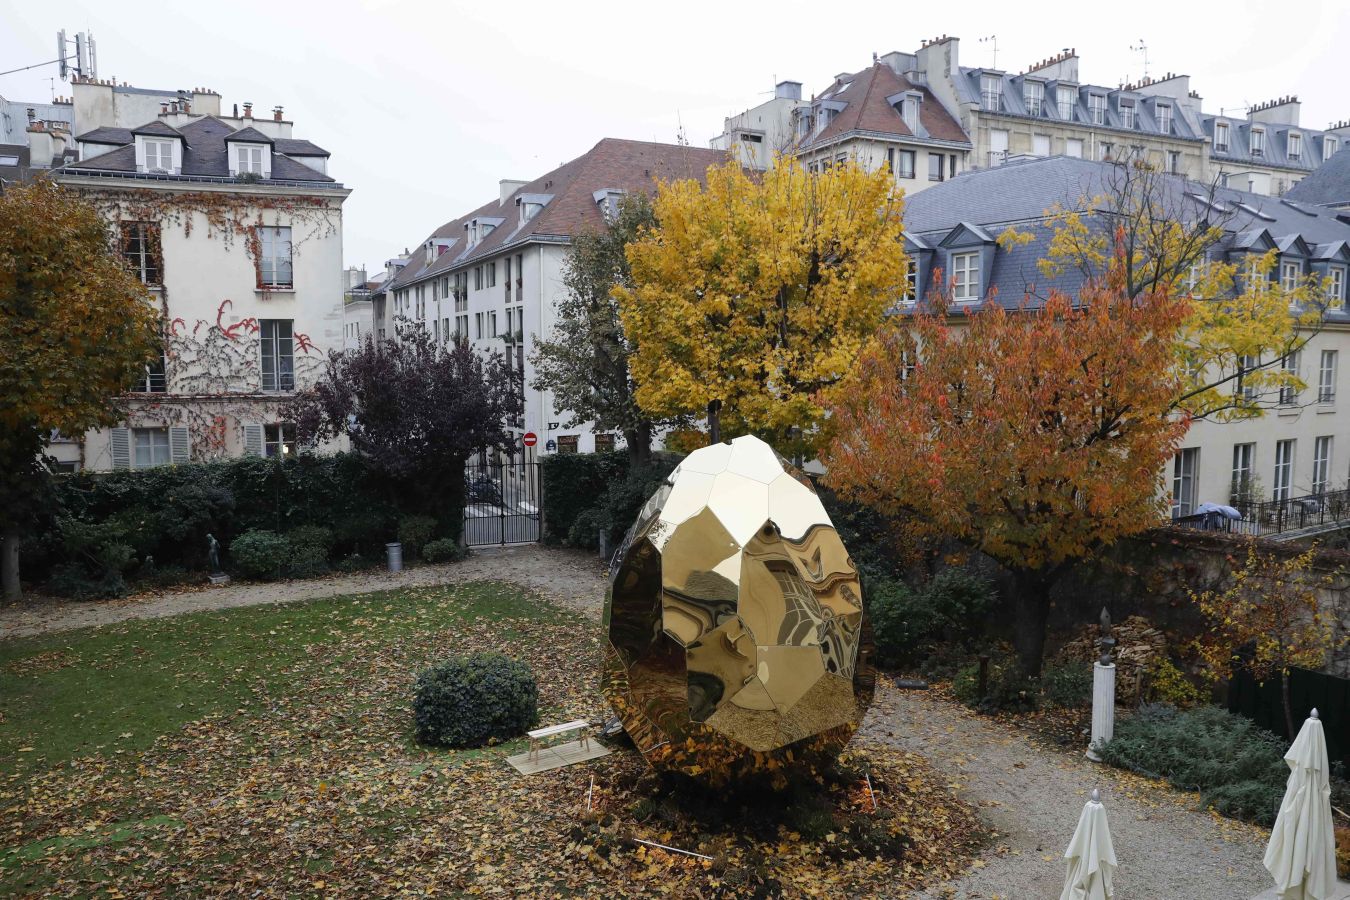 Una sauna en forma de huevo diseñada por los artistas Bigert y Bergström se puede disfrutar en el patio del instituto sueco en París. La exposición tiene como objetivo llamar la atención sobre el diseño, la arquitectura y la moda suecas en Francia